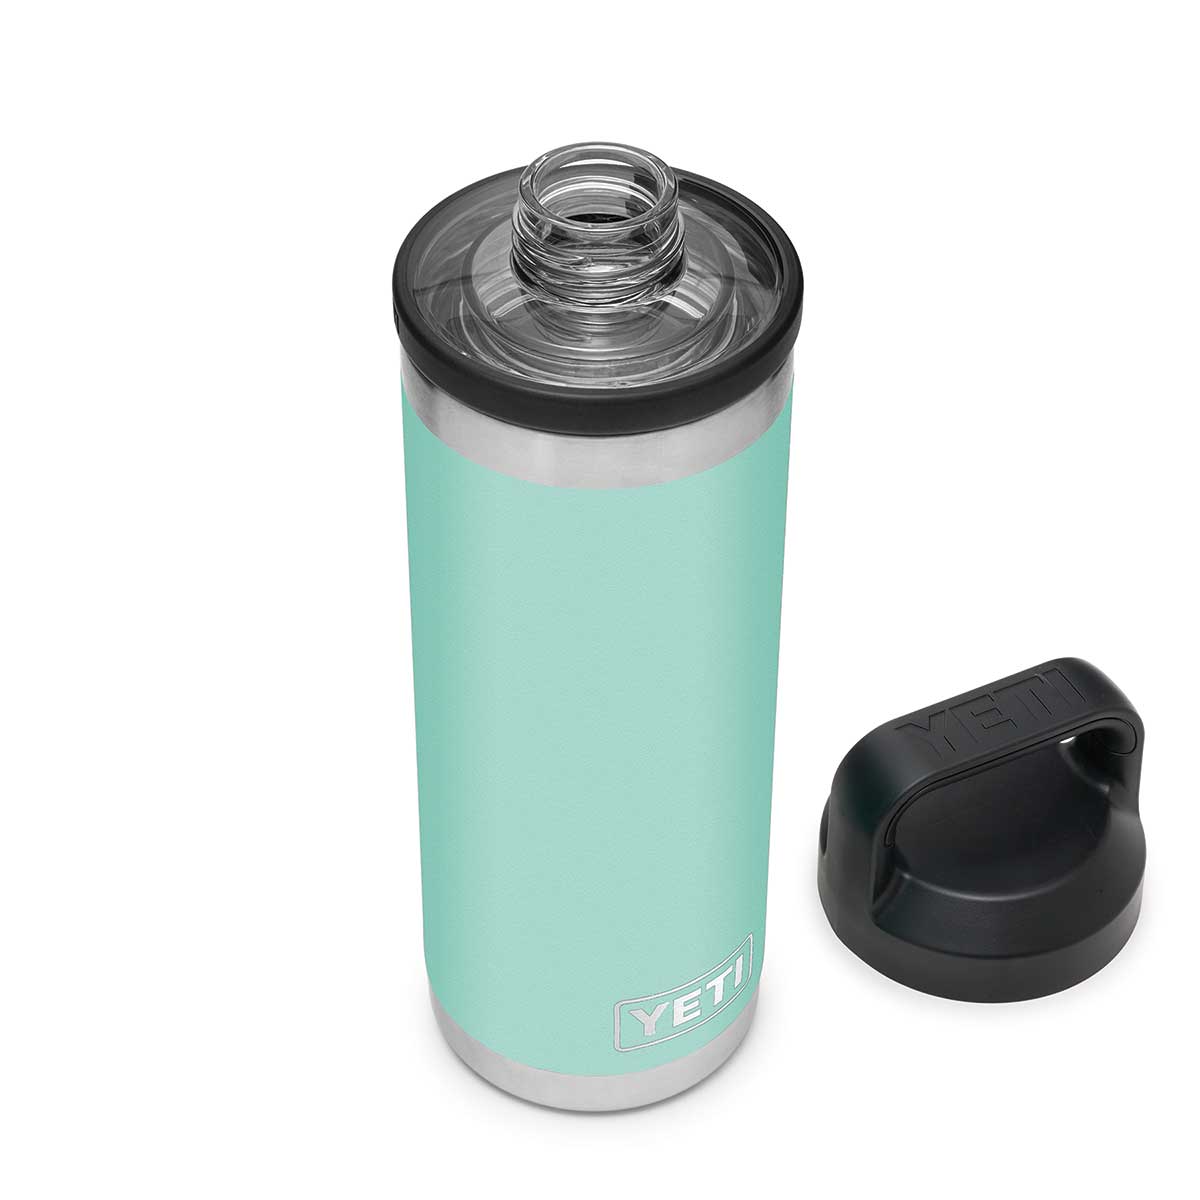 YETI Rambler 18 oz Stainless Steel BPA Free Bottle with Chug Cap 